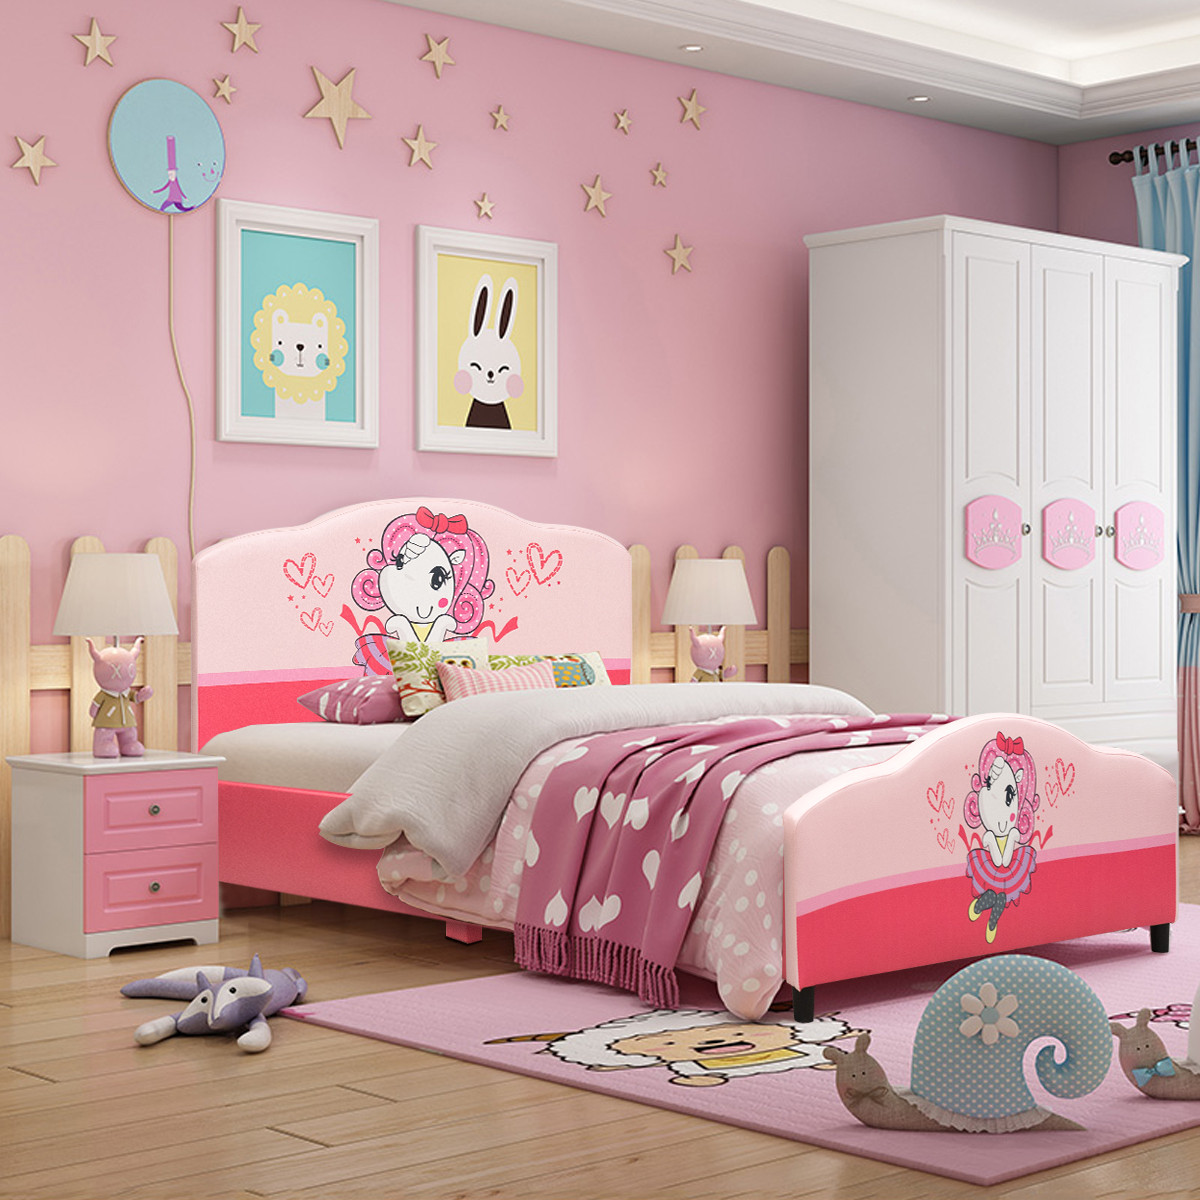 Walmart Kids Bedroom Furniture
 Costway Kids Children Upholstered Platform Toddler Bed